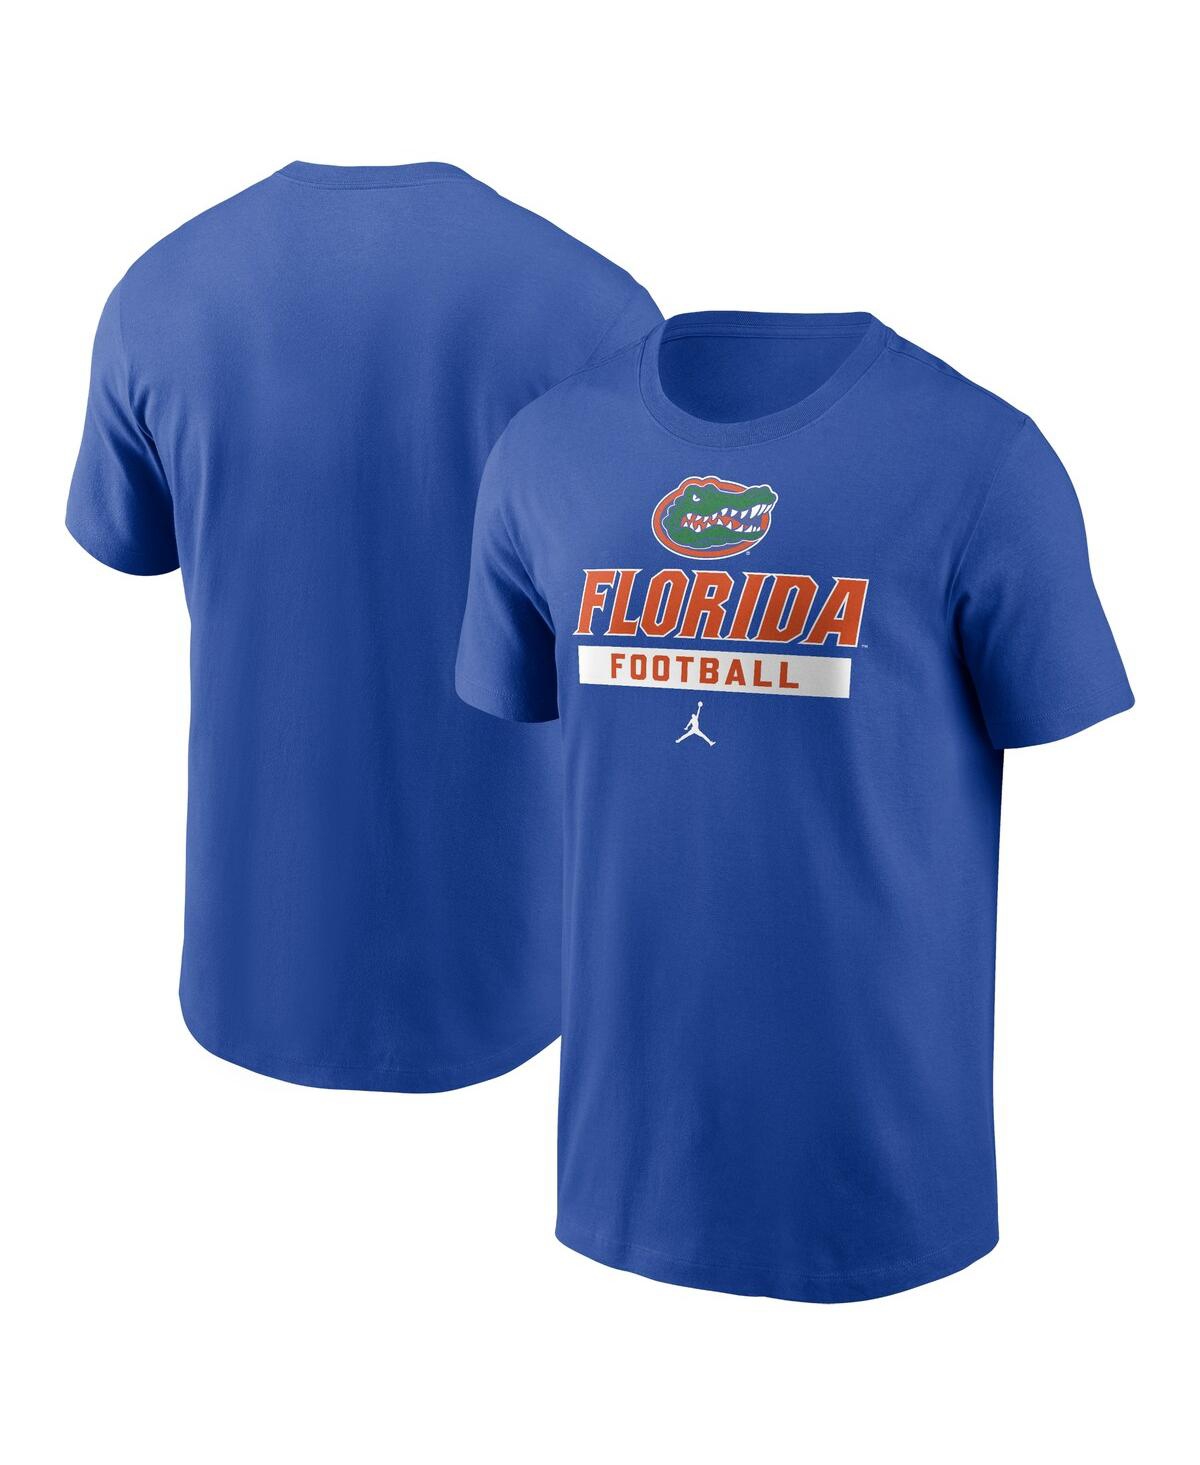 Men's Royal Florida Gators Football T-Shirt - Royal